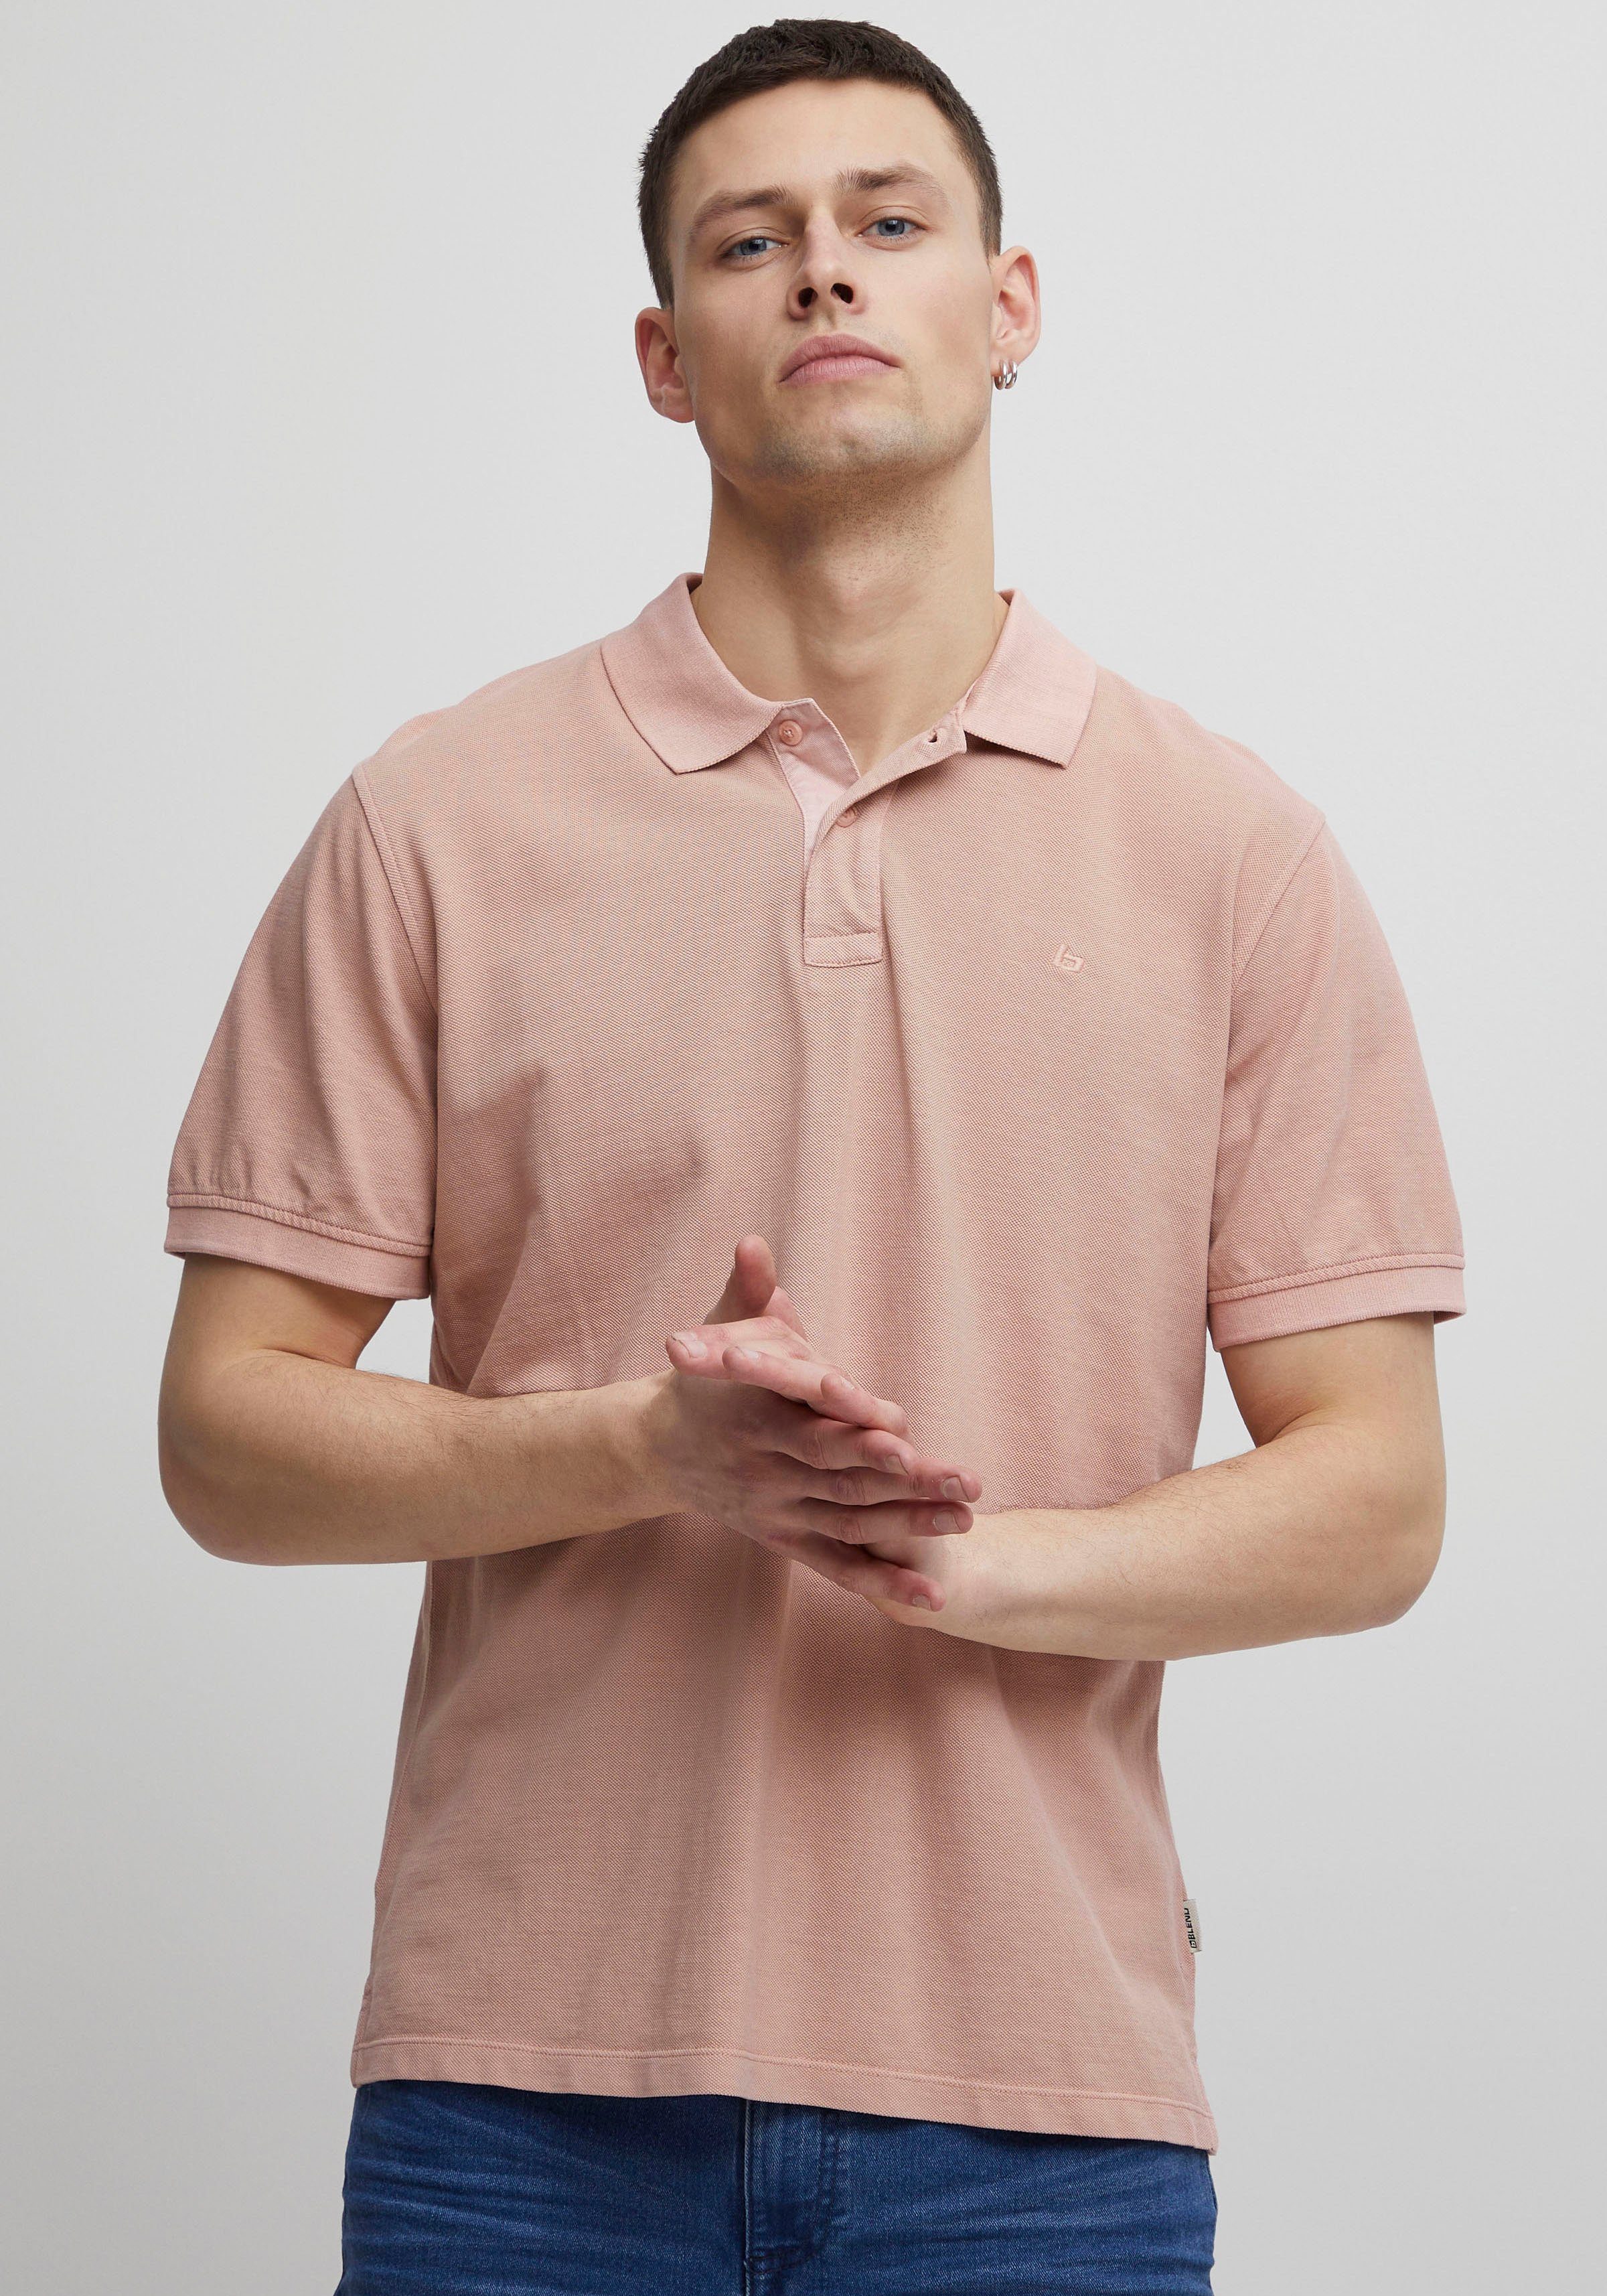 pink BL-Poloshirt Blend Poloshirt